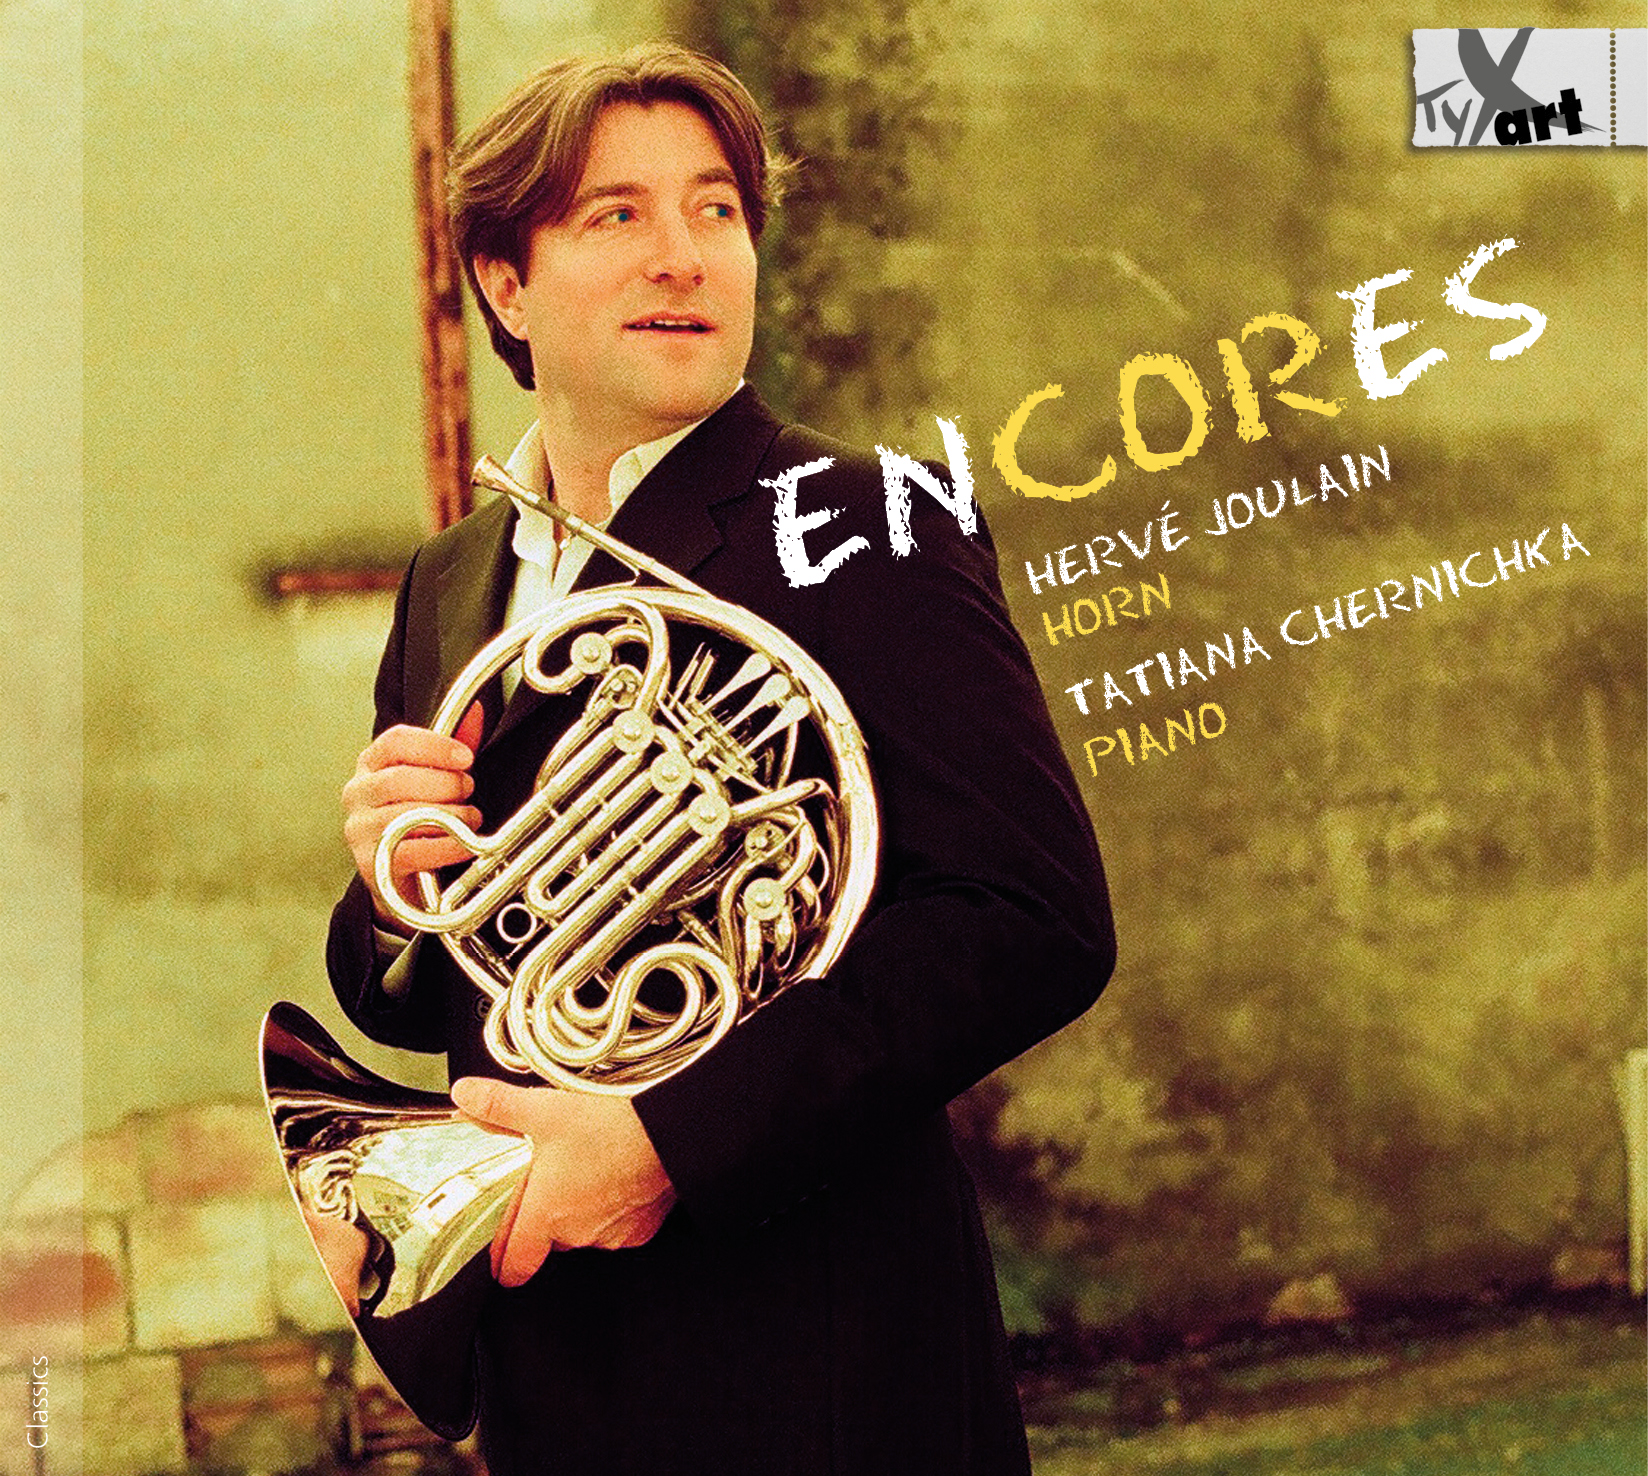 enCORes - Hervé Joulain, Horn - Tatiana Chernichka, Piano - special guests